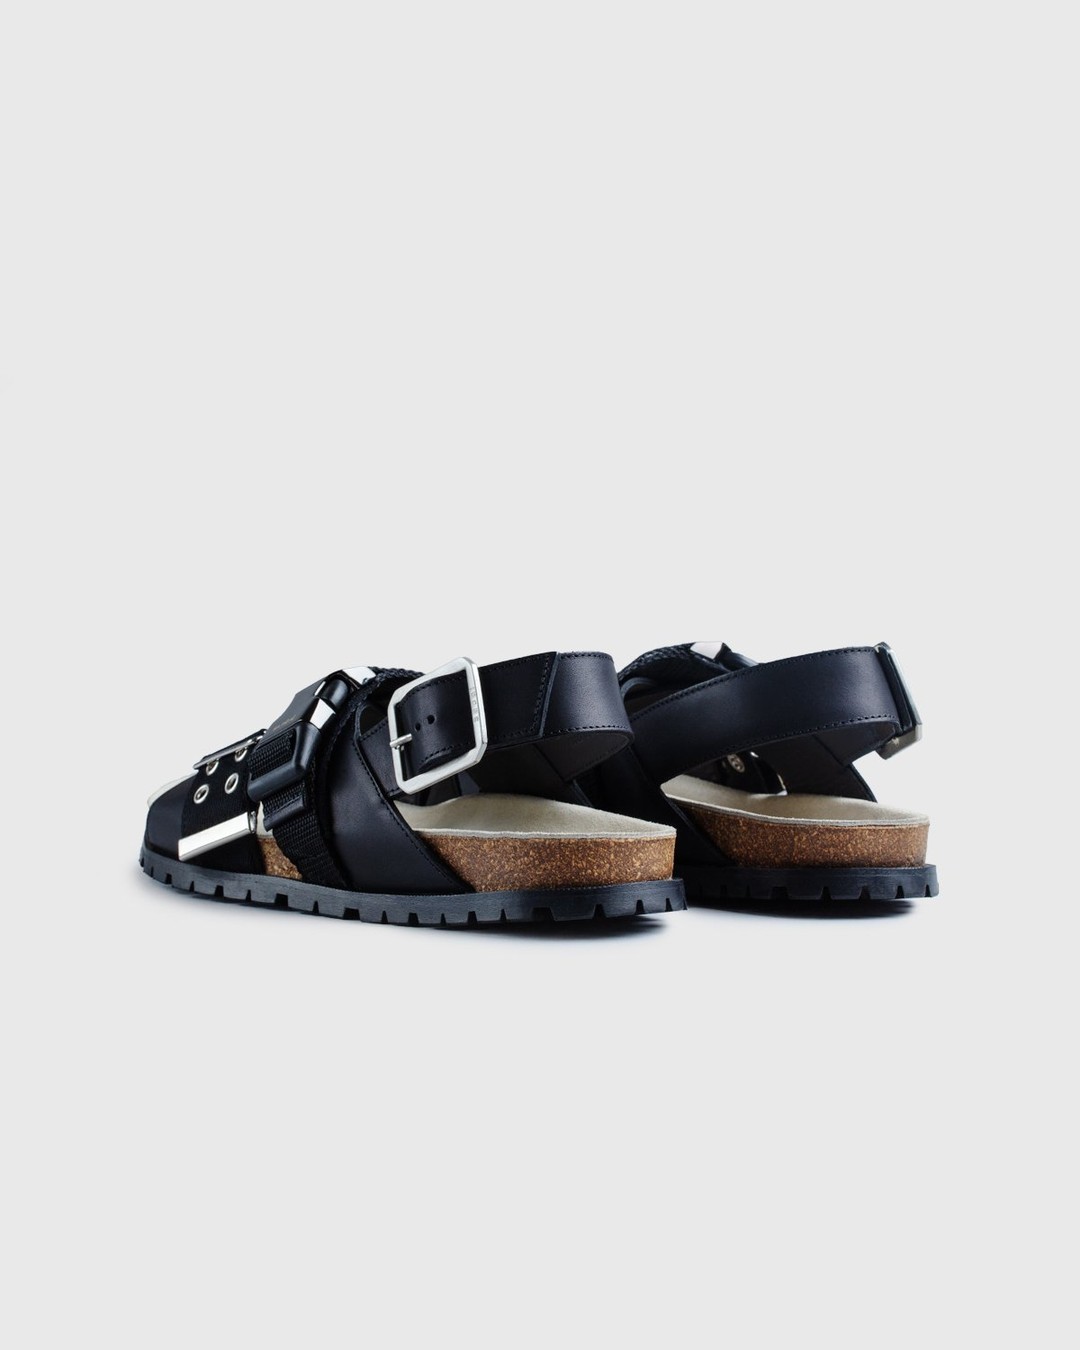 A.P.C. x Sacai – Sandals Black - Sandals - Black - Image 4